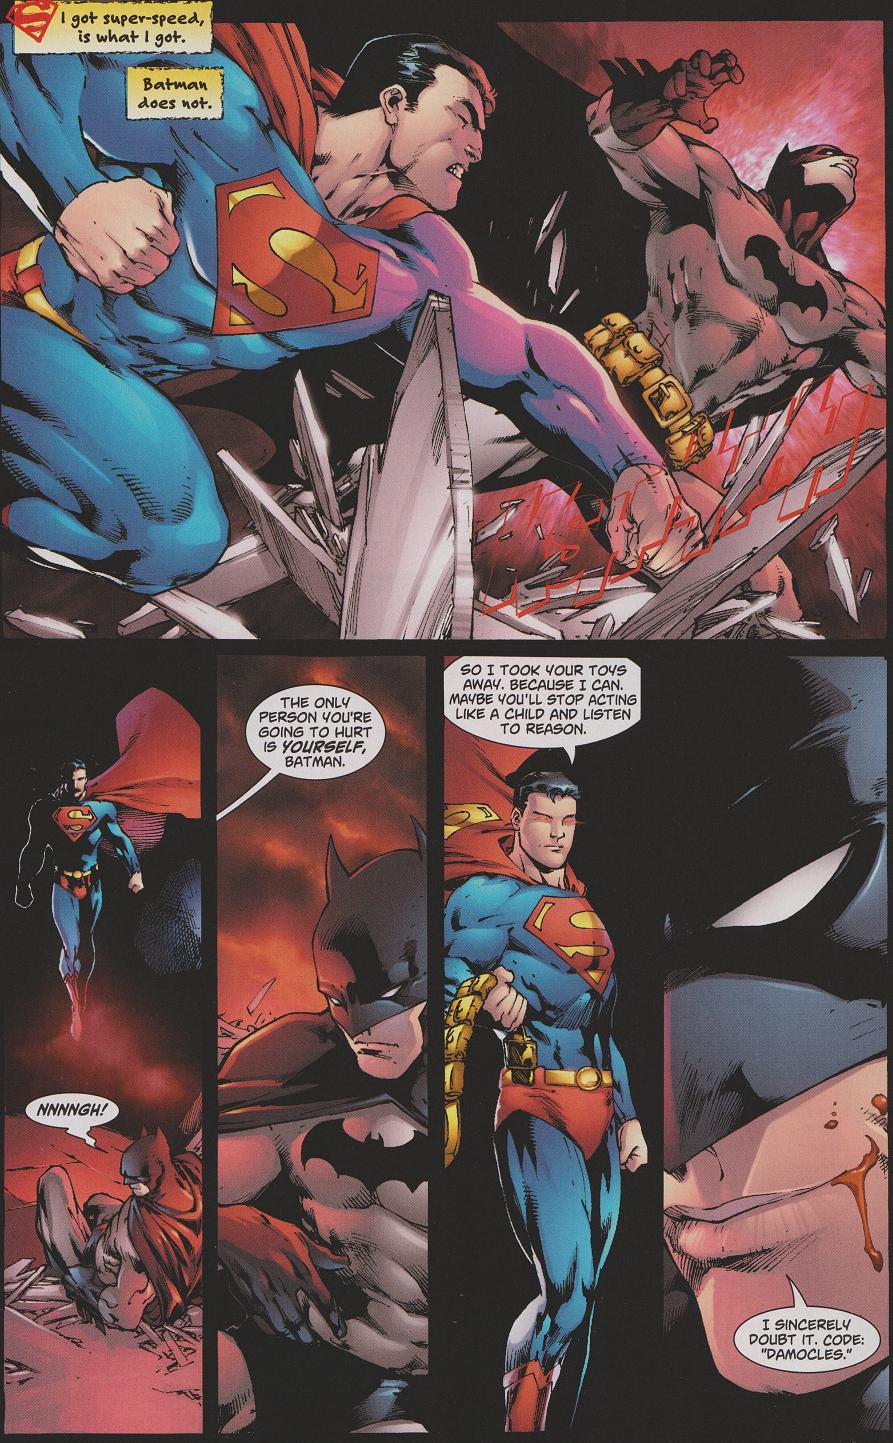 Batman X Superman Sit Um, if superman got the first